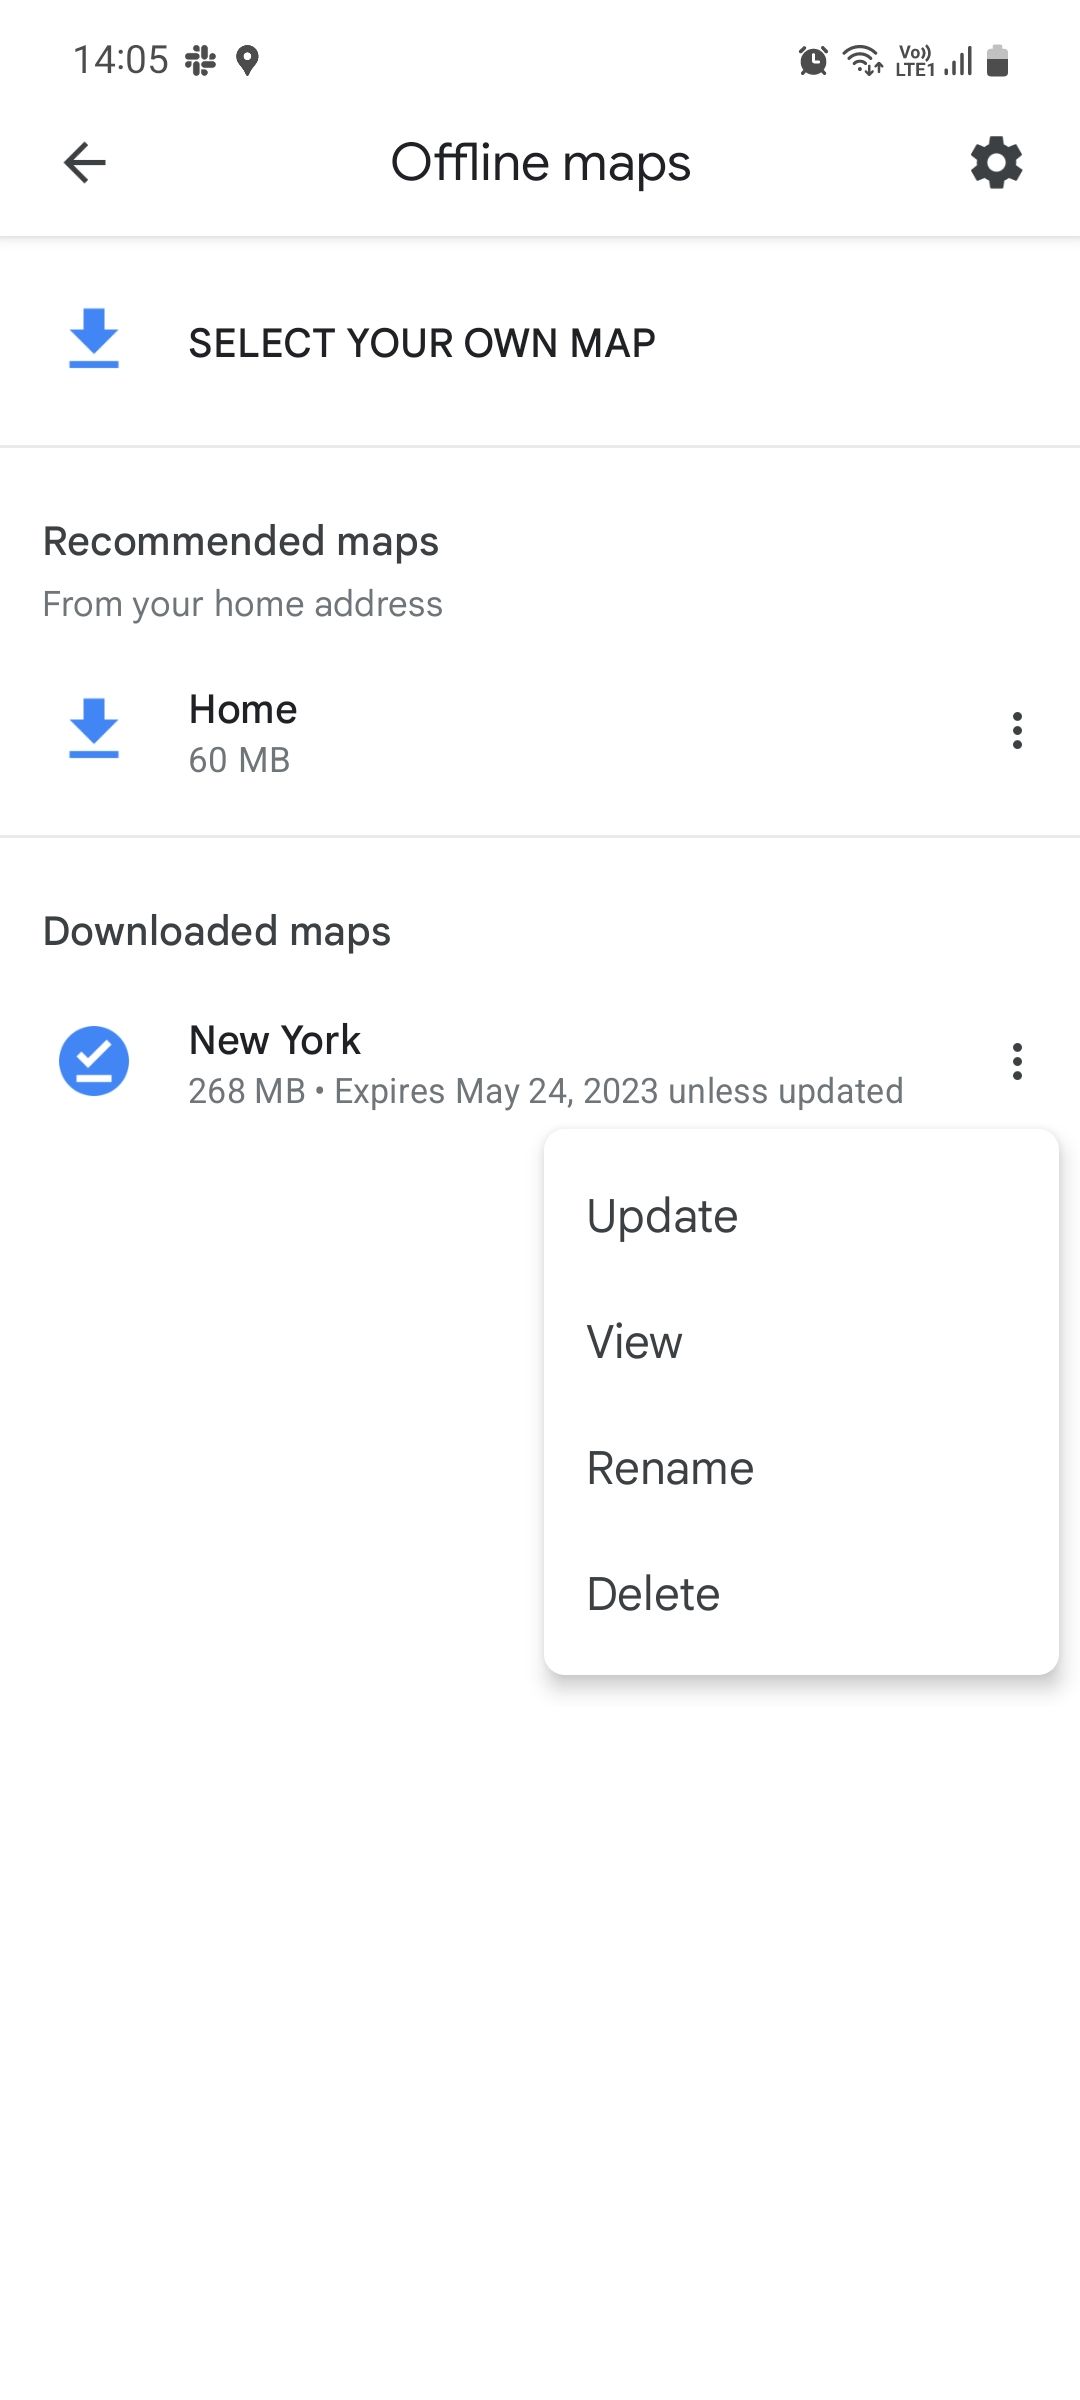 Google maps offline maps menu